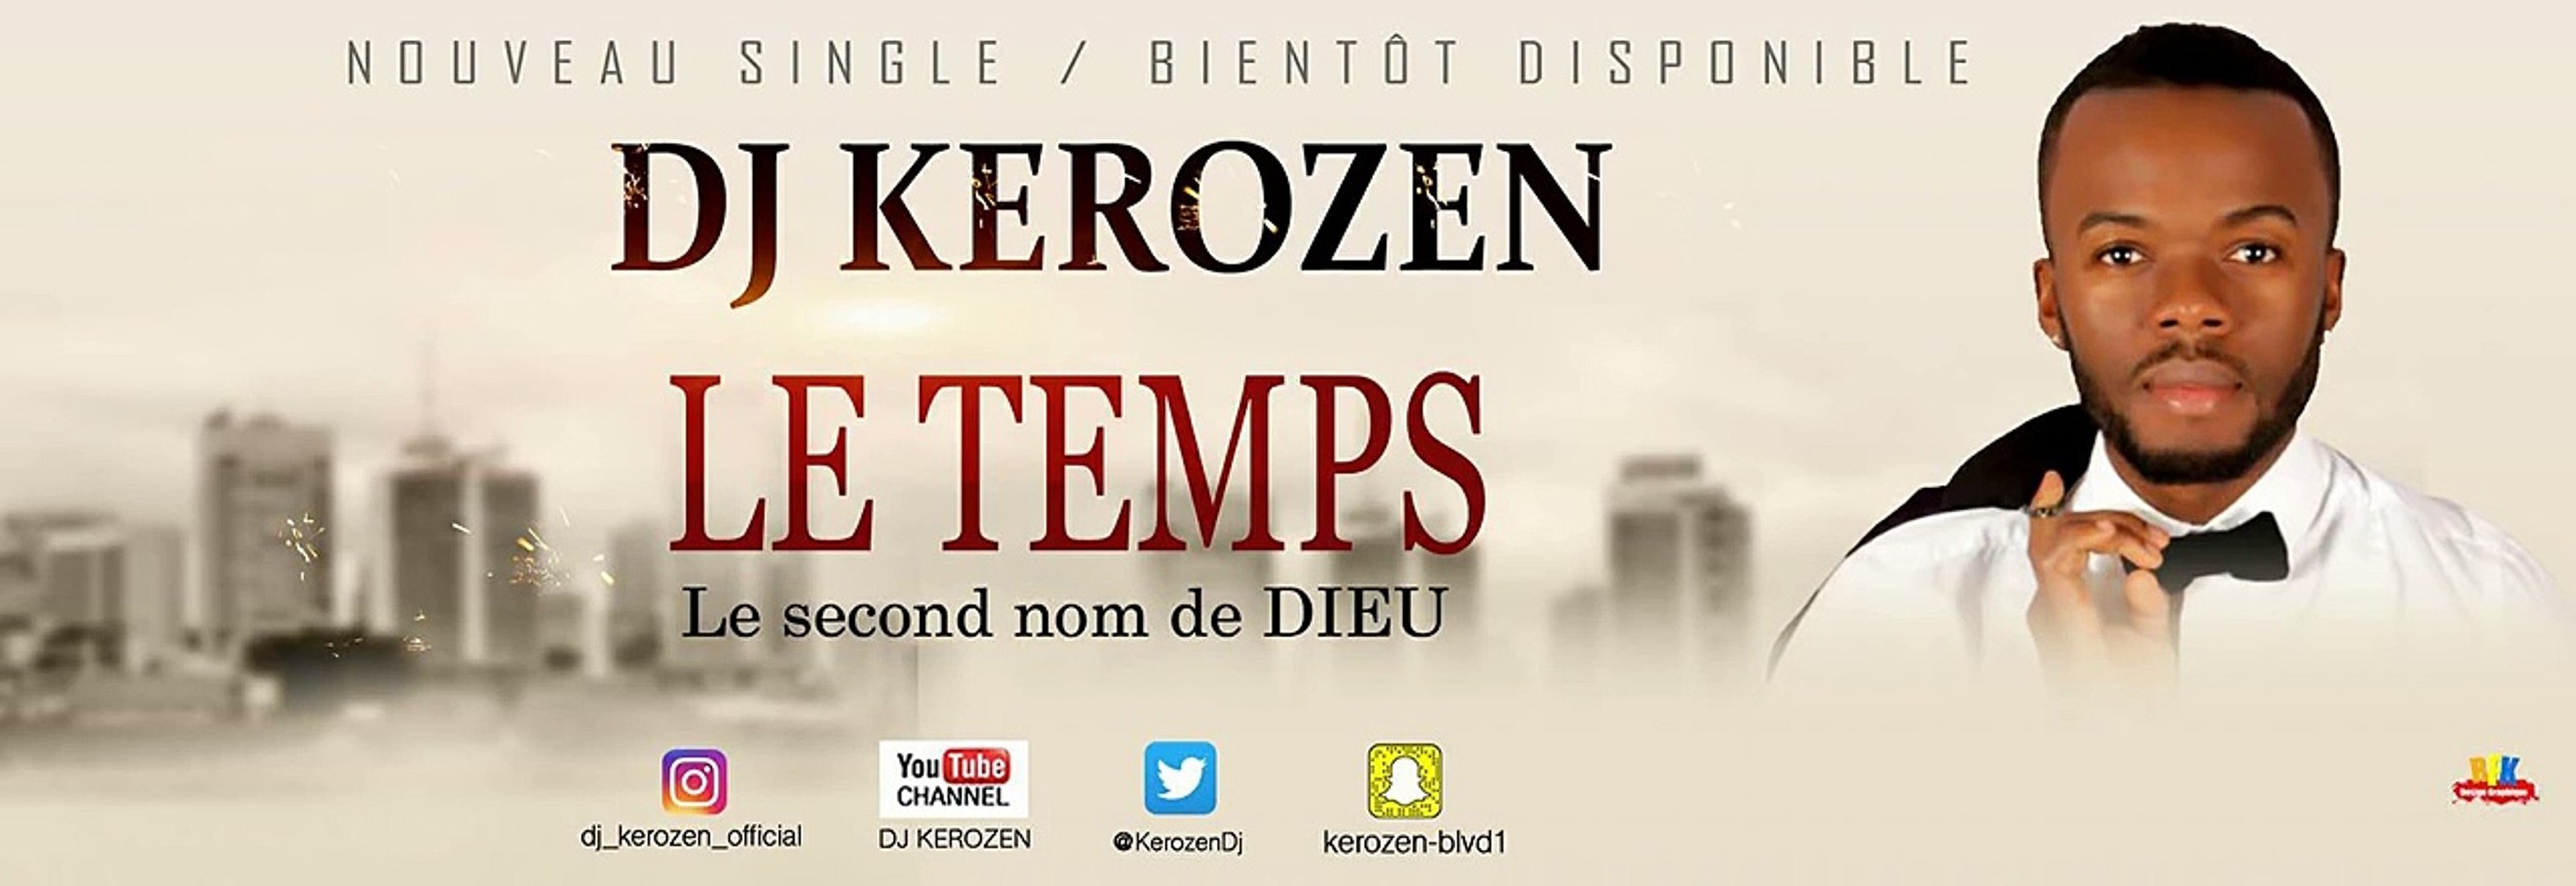 DJ KEROZEN - LE TEMPS [Paroles] - Vidéo Dailymotion